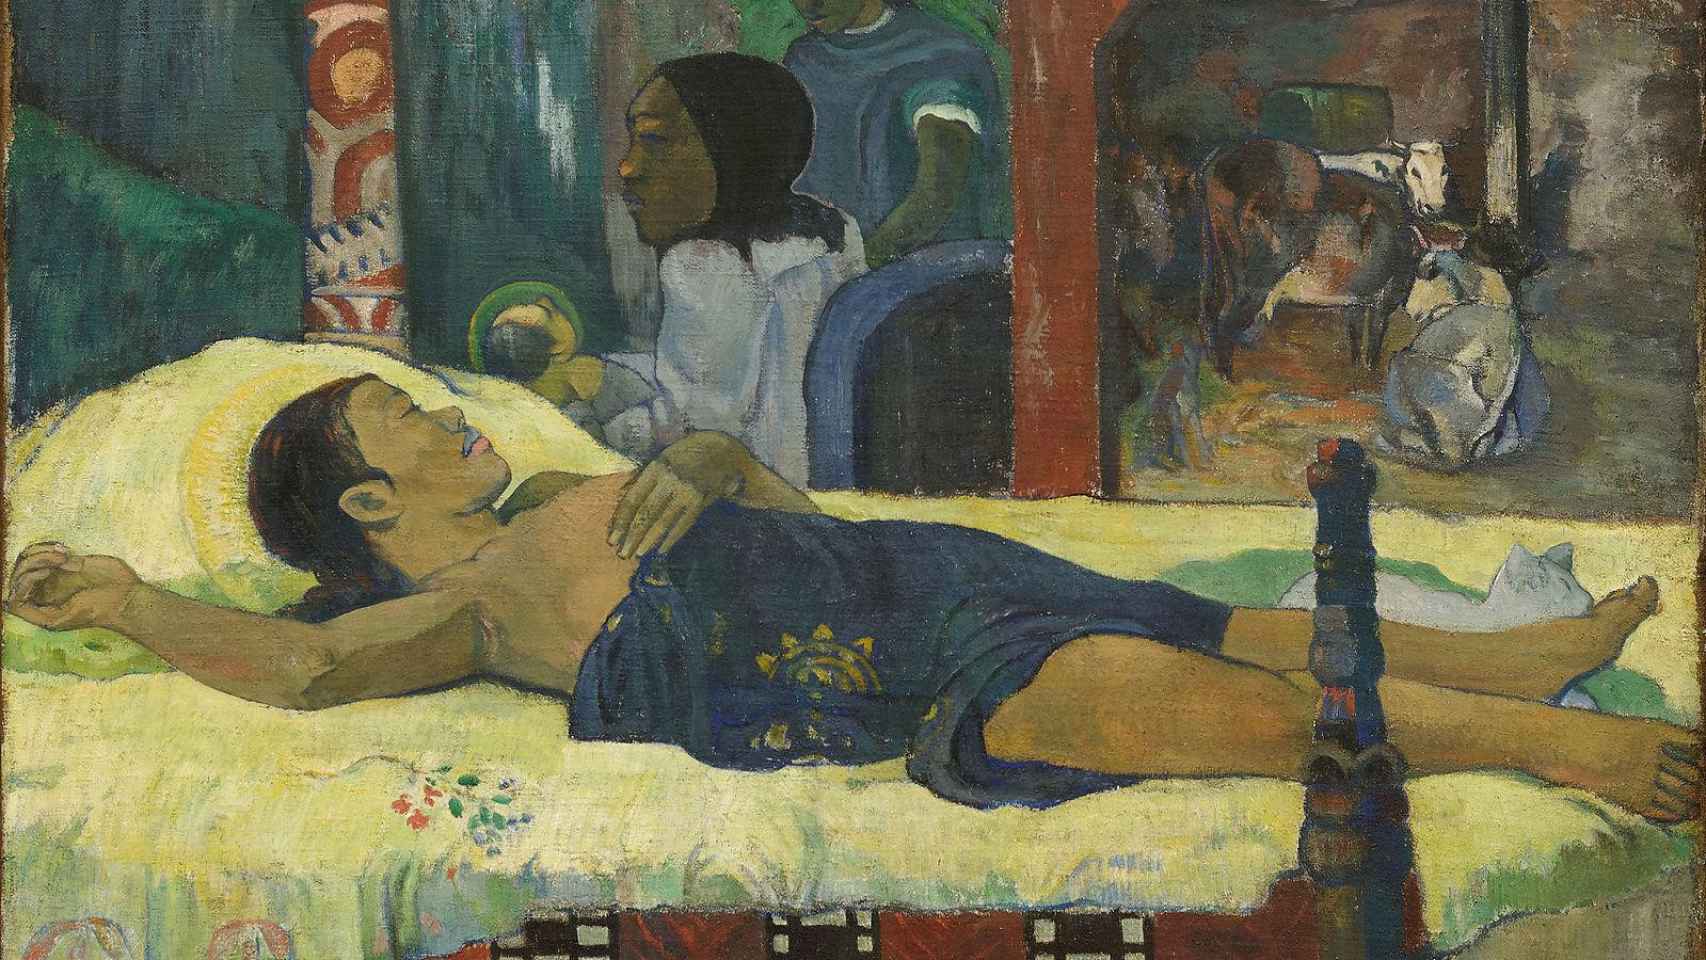 El nacimiento, Paul Gauguin, 1896.